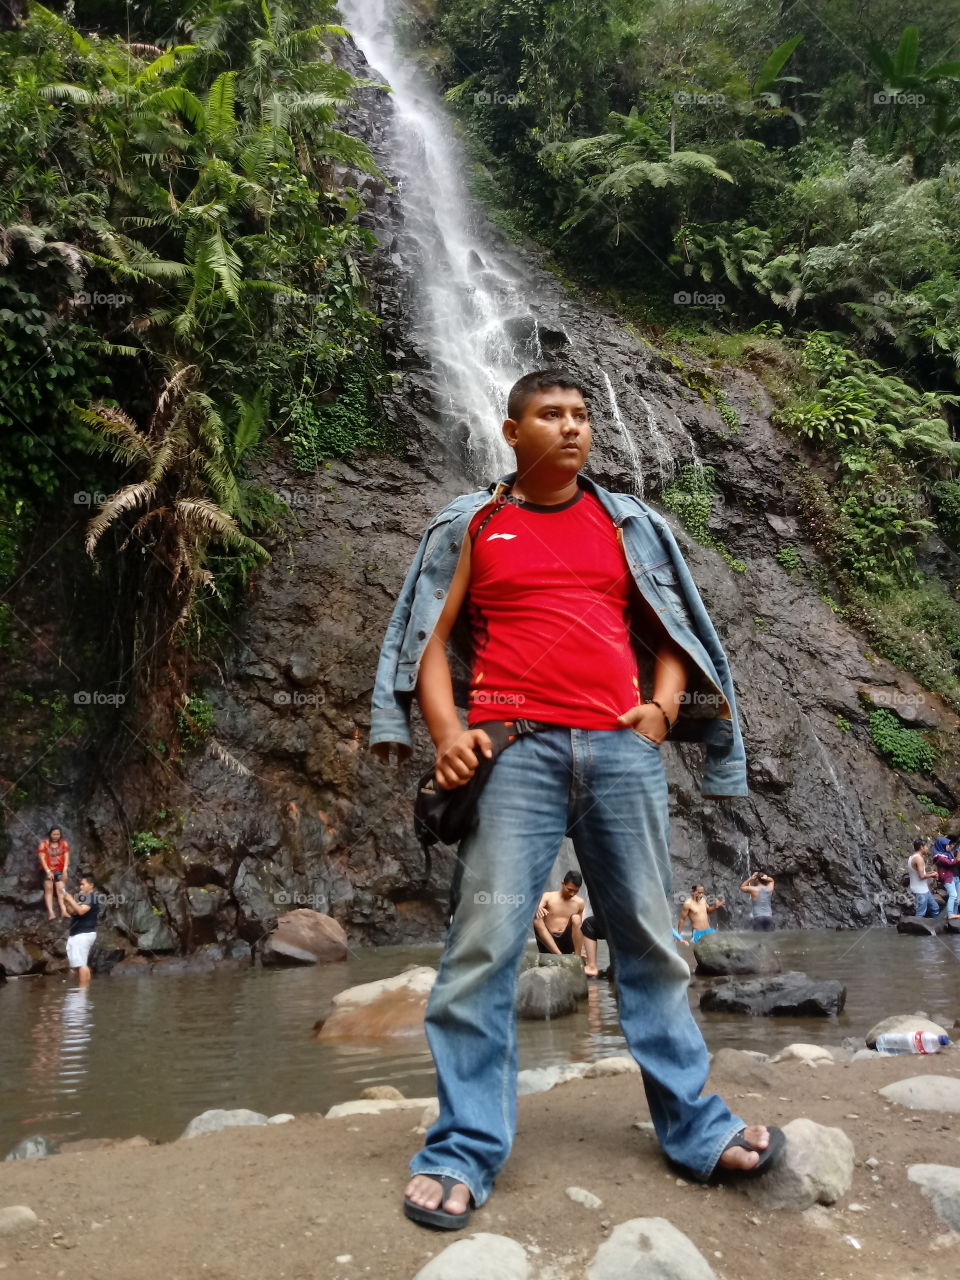 waterfall at subang